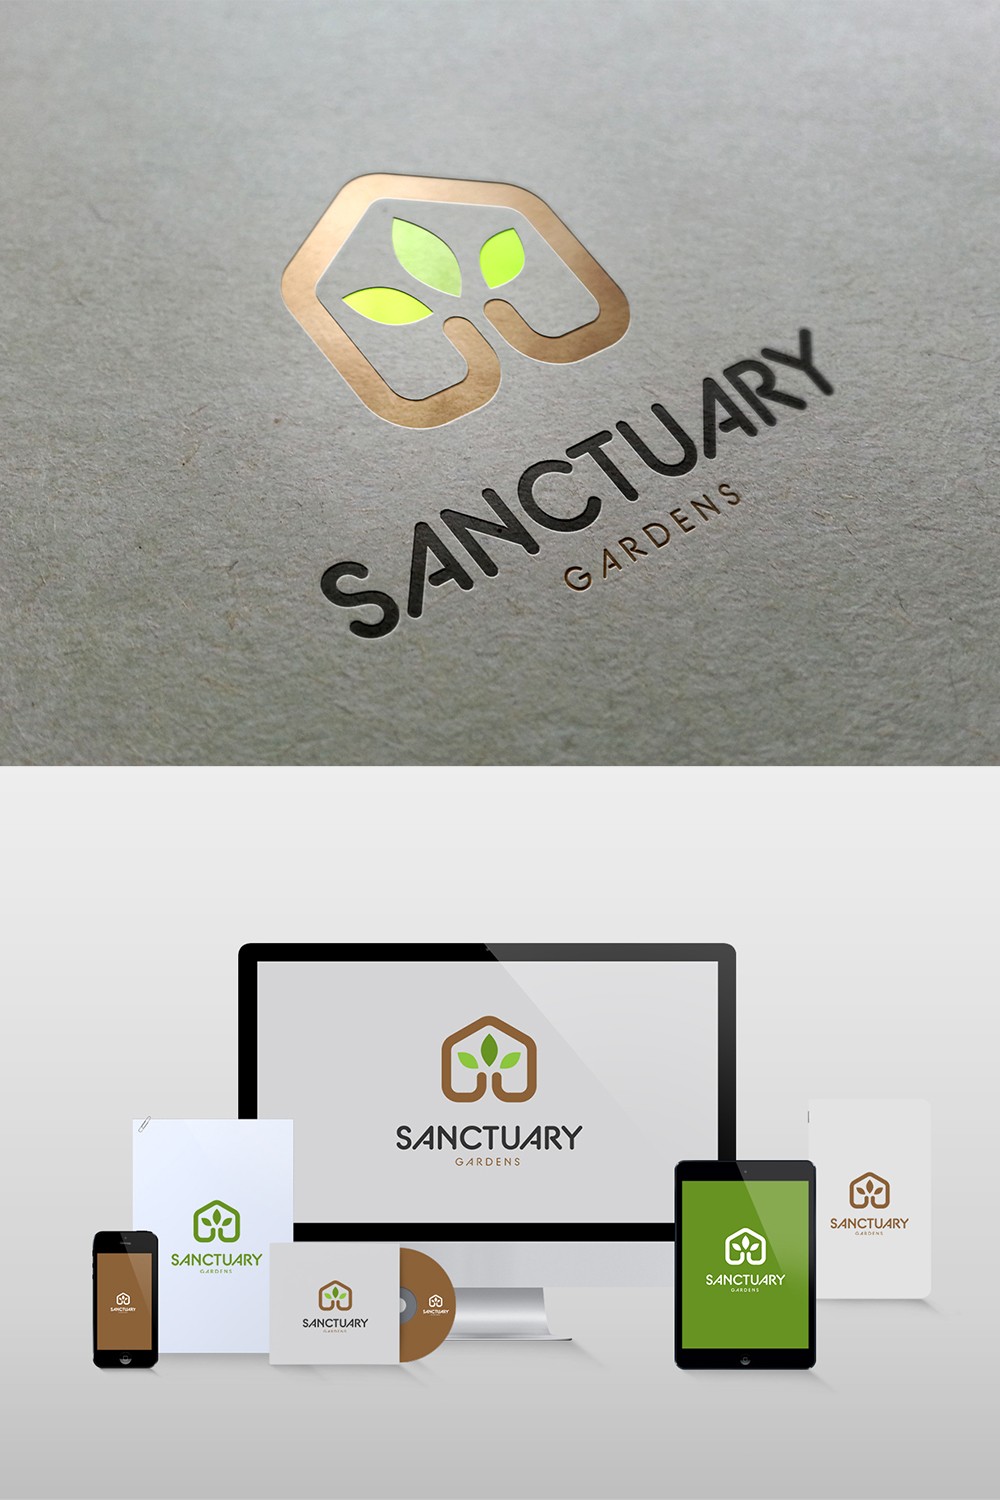 Sanctuary Gardens - Second Concept - pinterest image preview.